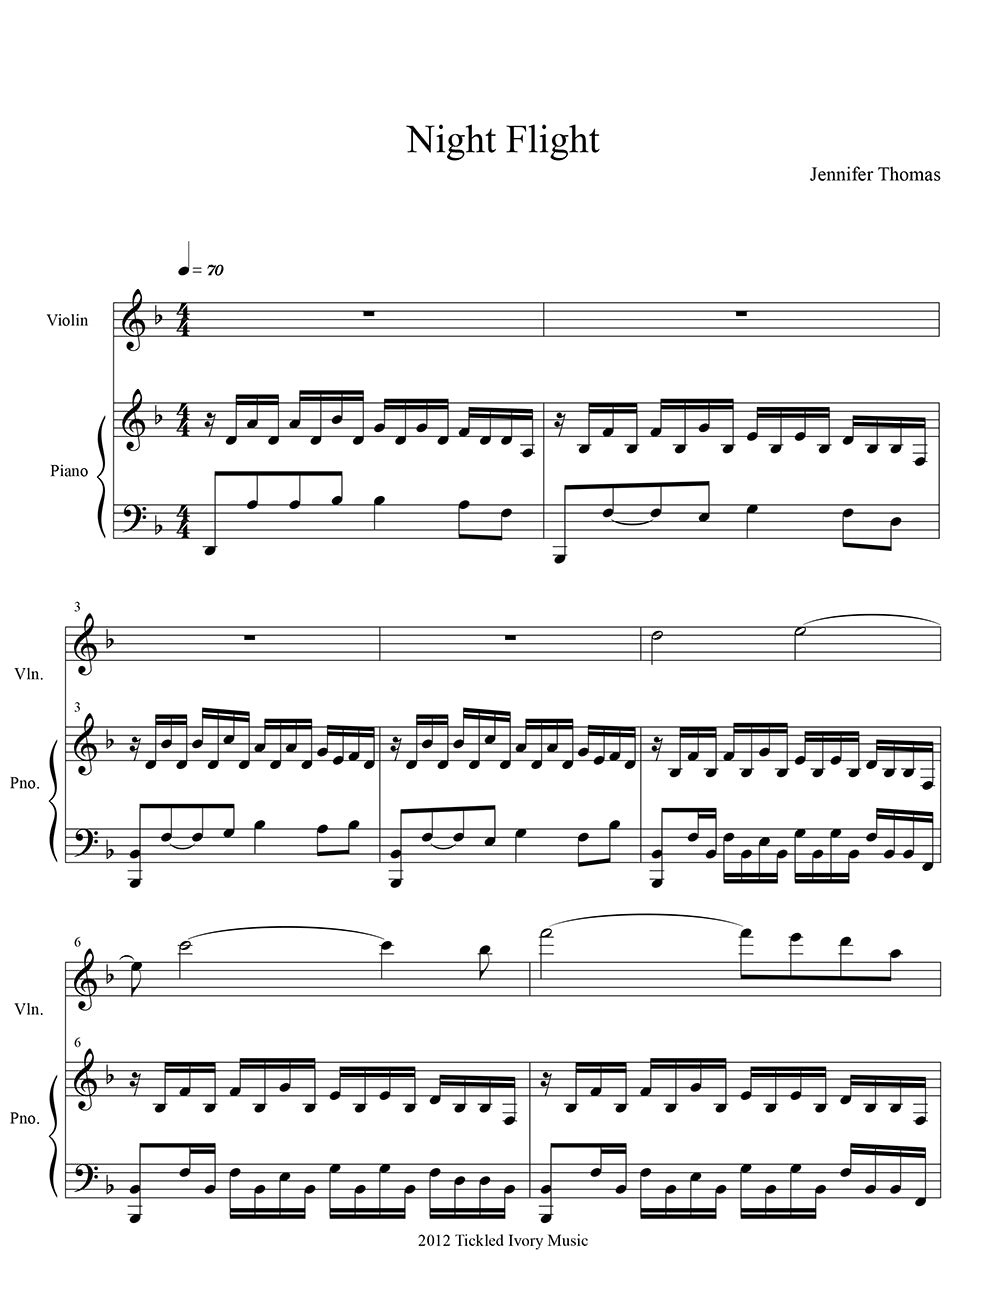 夜間飛行 (ピアノとヴァイオリンの二重奏)